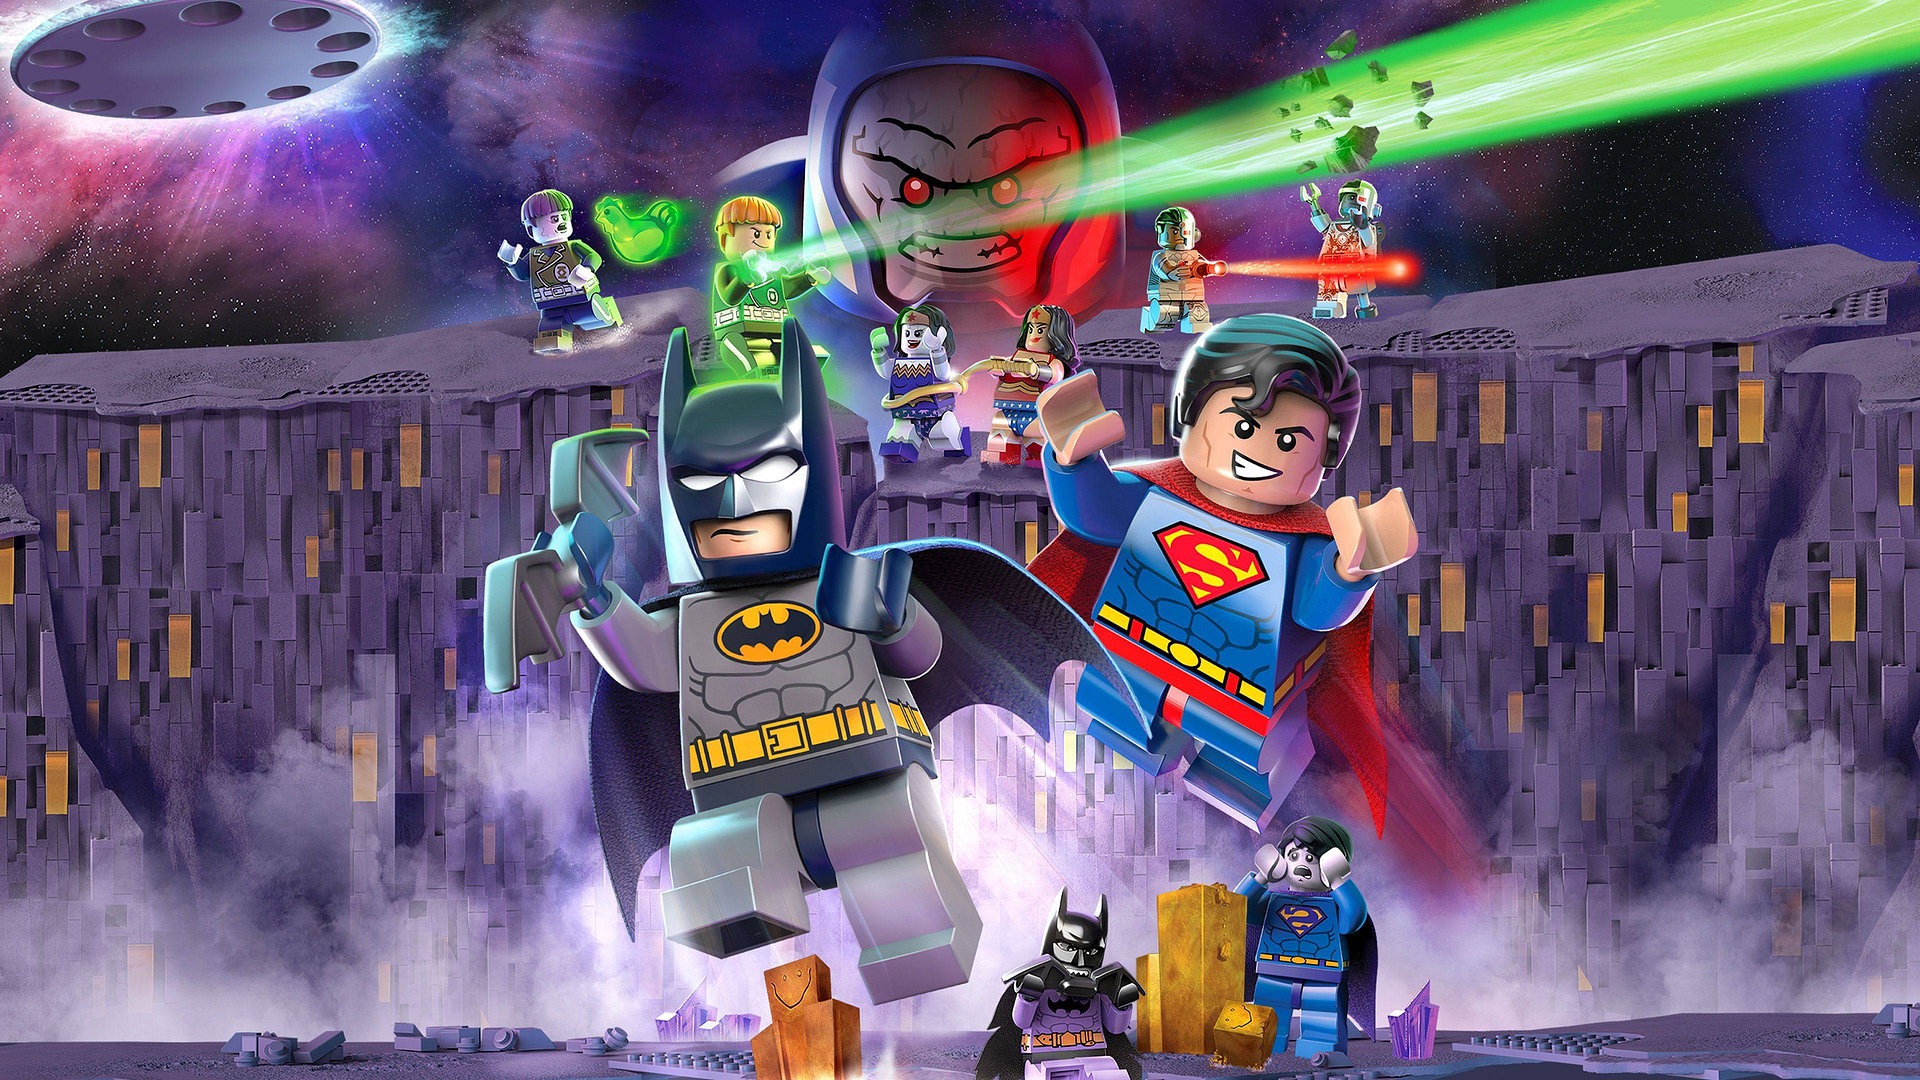 Lego Justice League vs Bizarro League